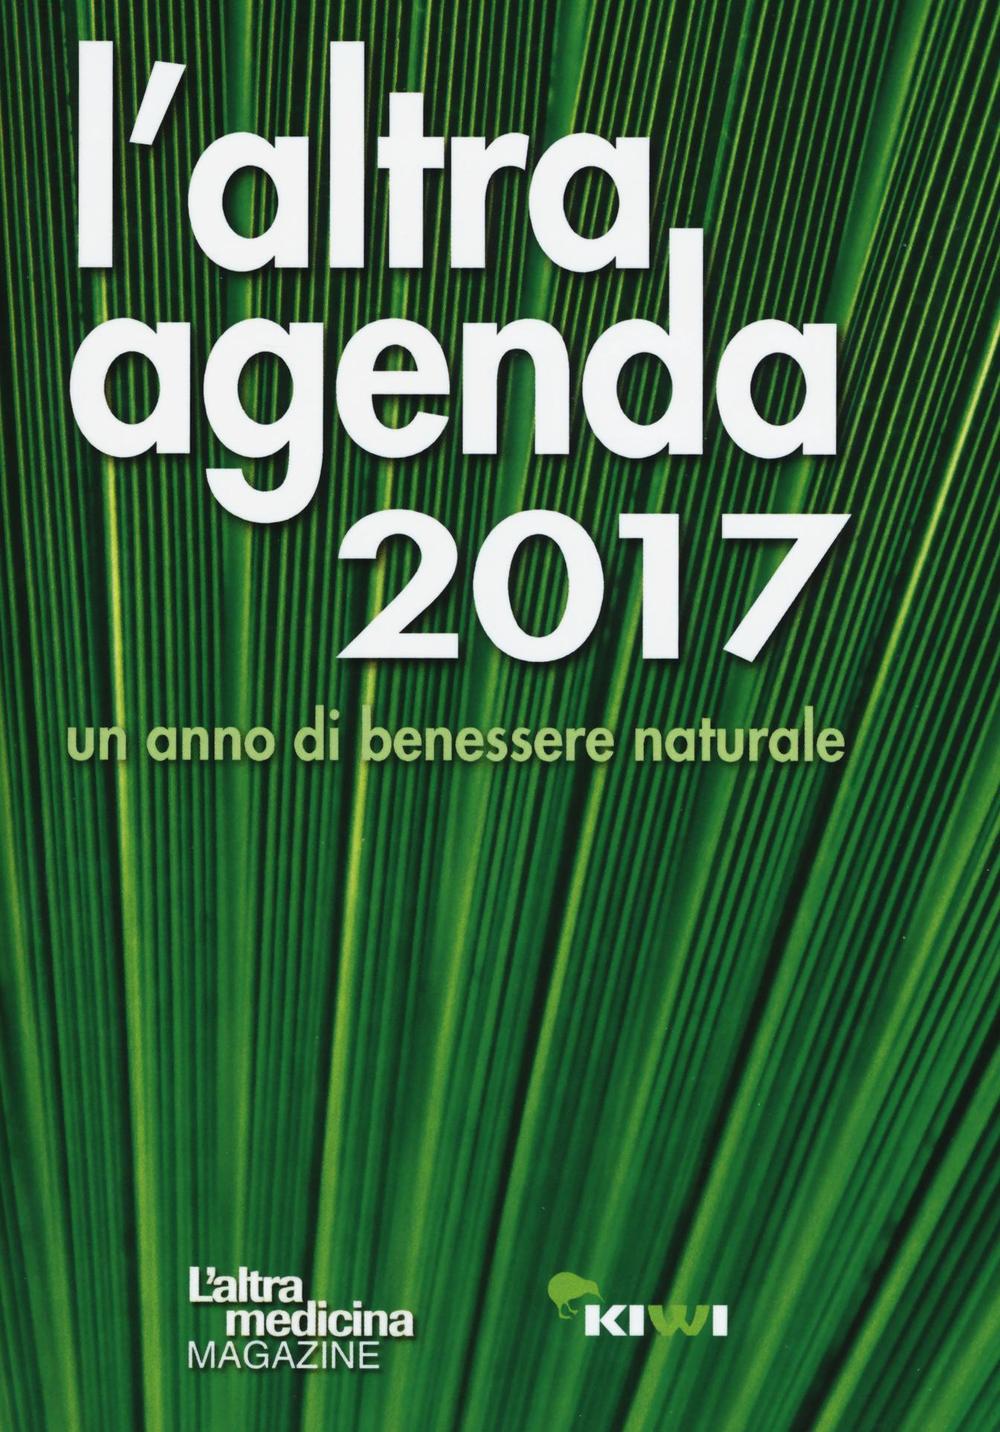 L'altra agenda 2017. Un anno di benessere naturale